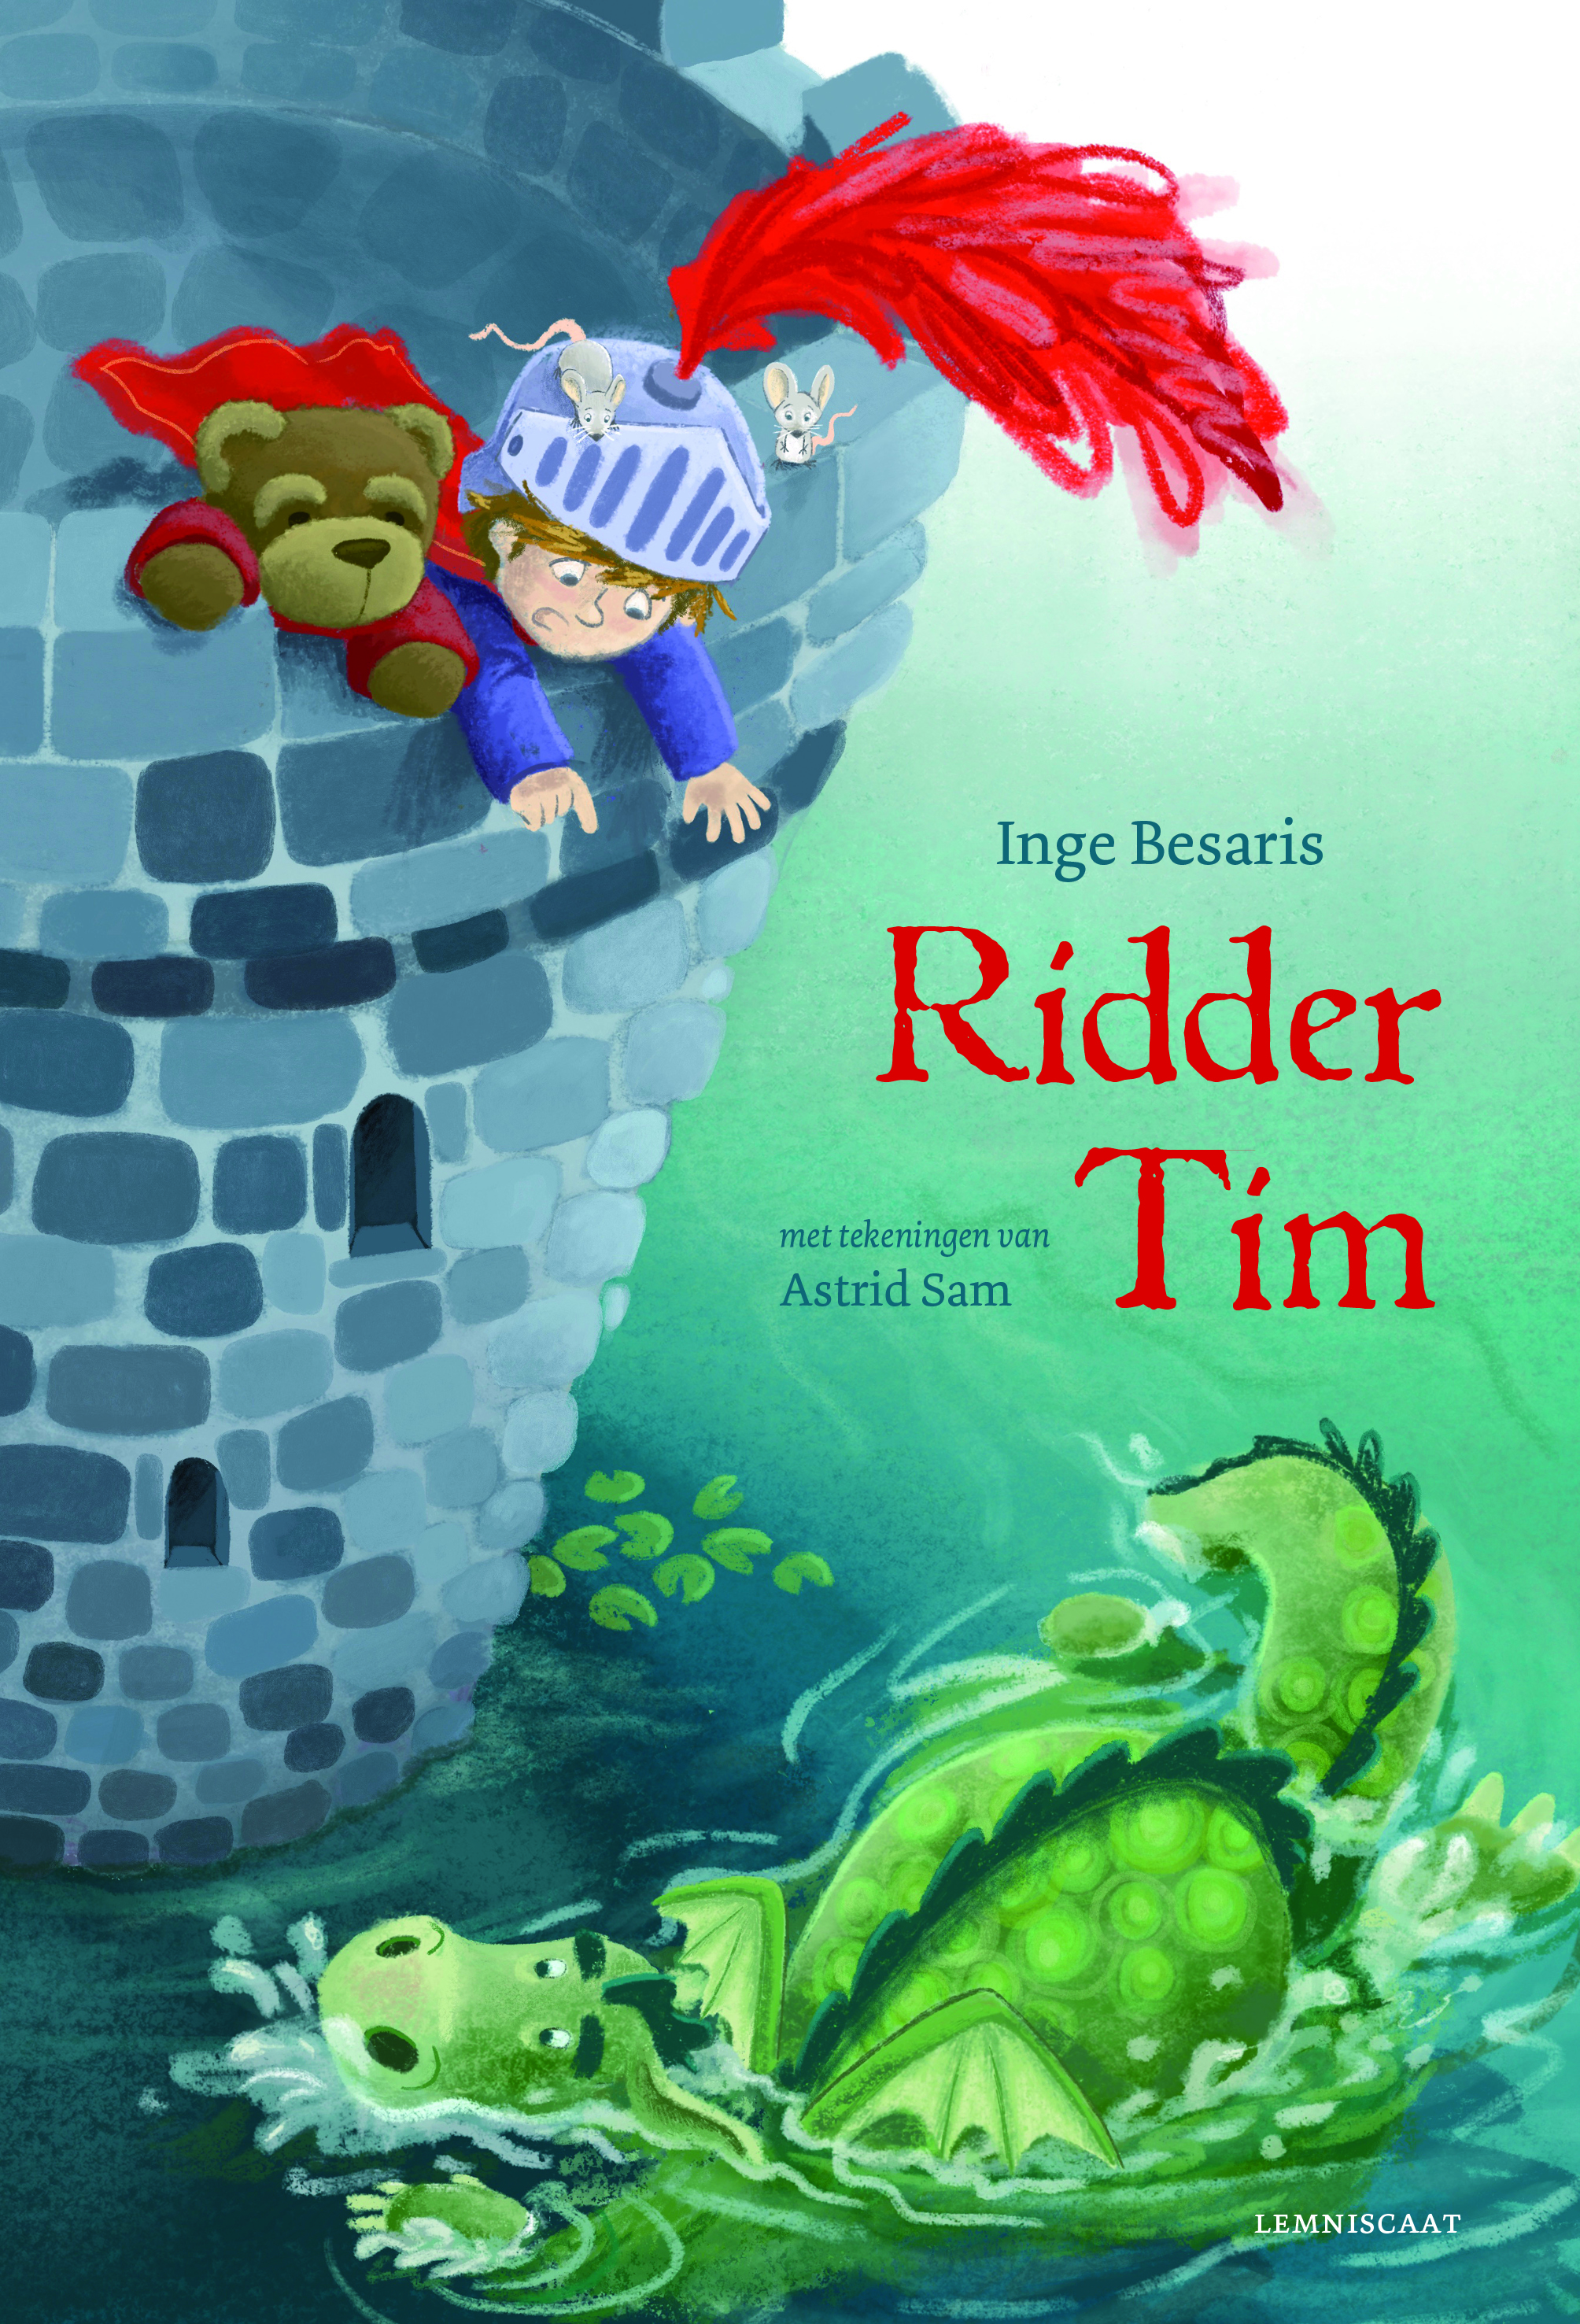 Het boek Ridder Tim, uitgegeven door Lemniscaat